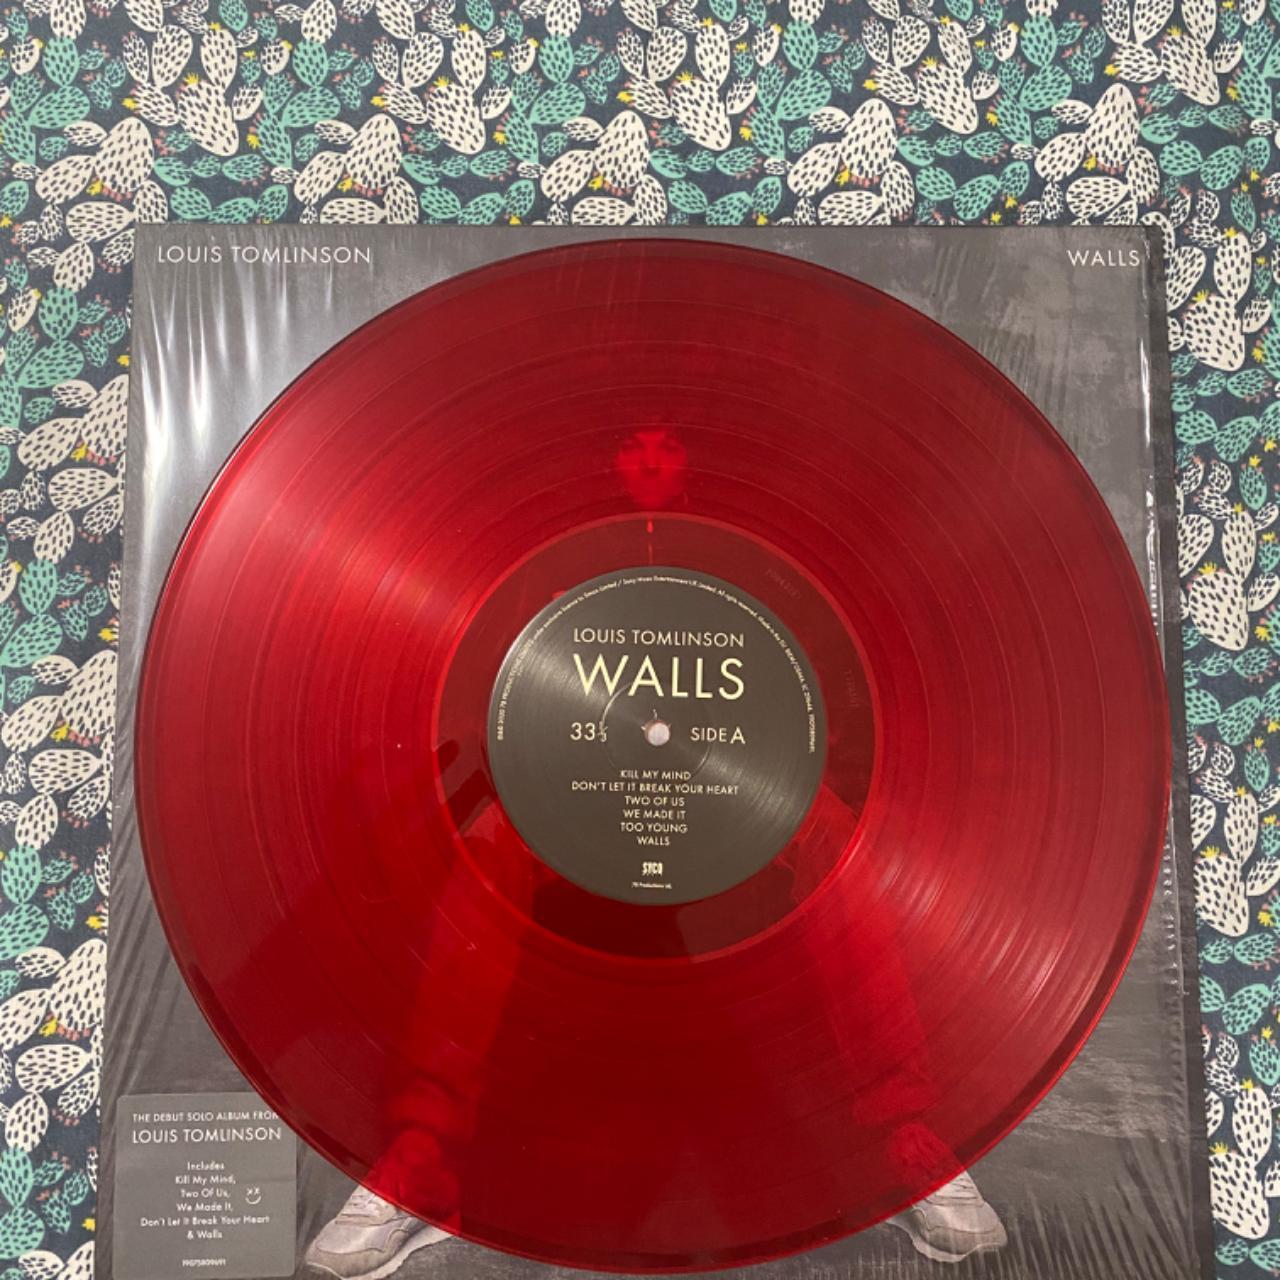 Walls - Louis Tomlinson Vinyl